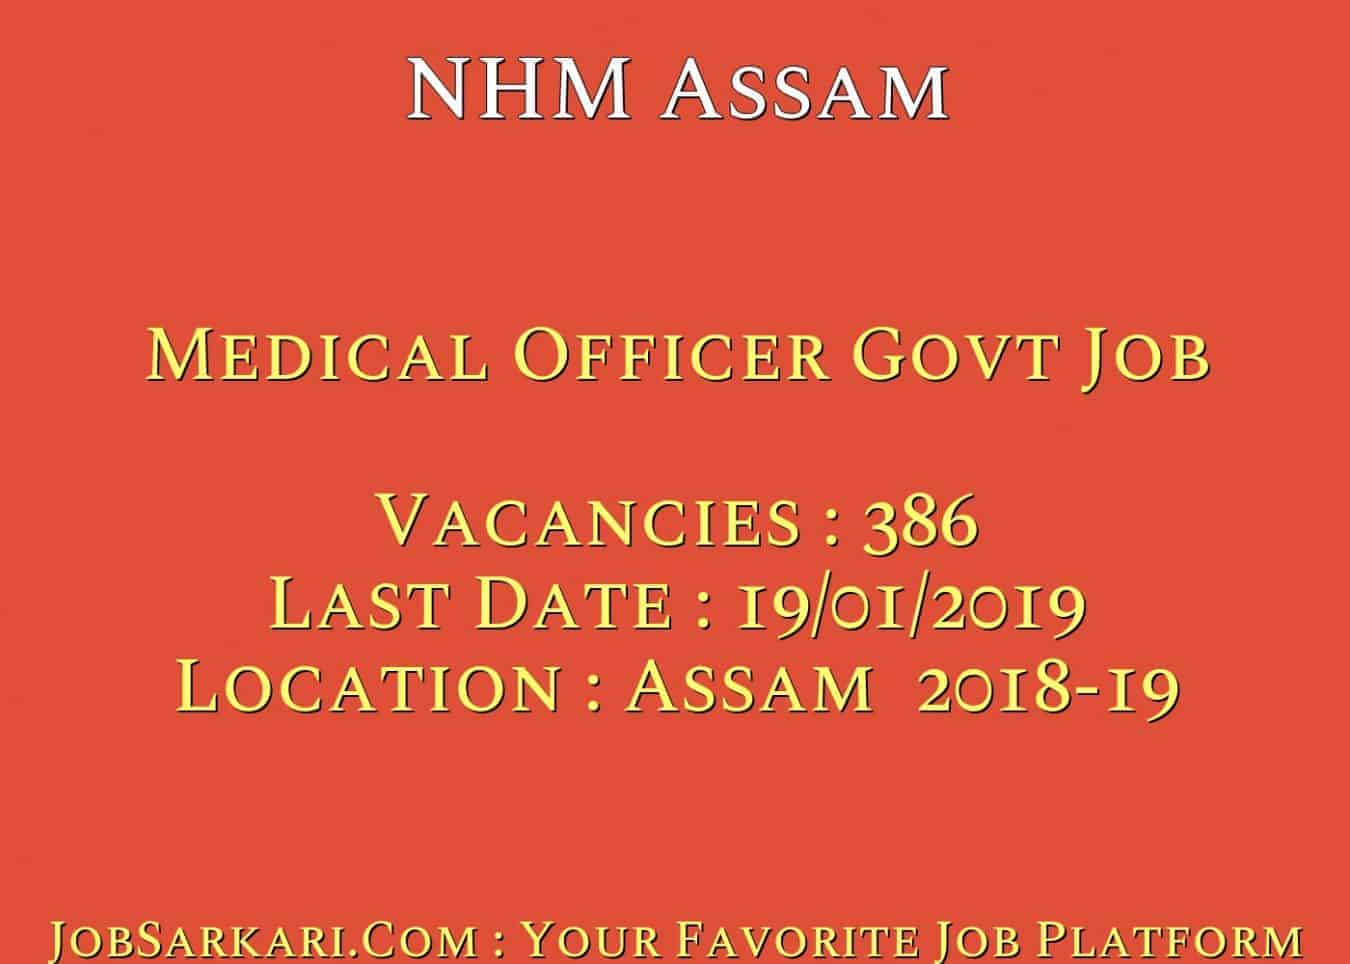 NHM Assam Recruitment 2019 For Medical Officer Govt Job